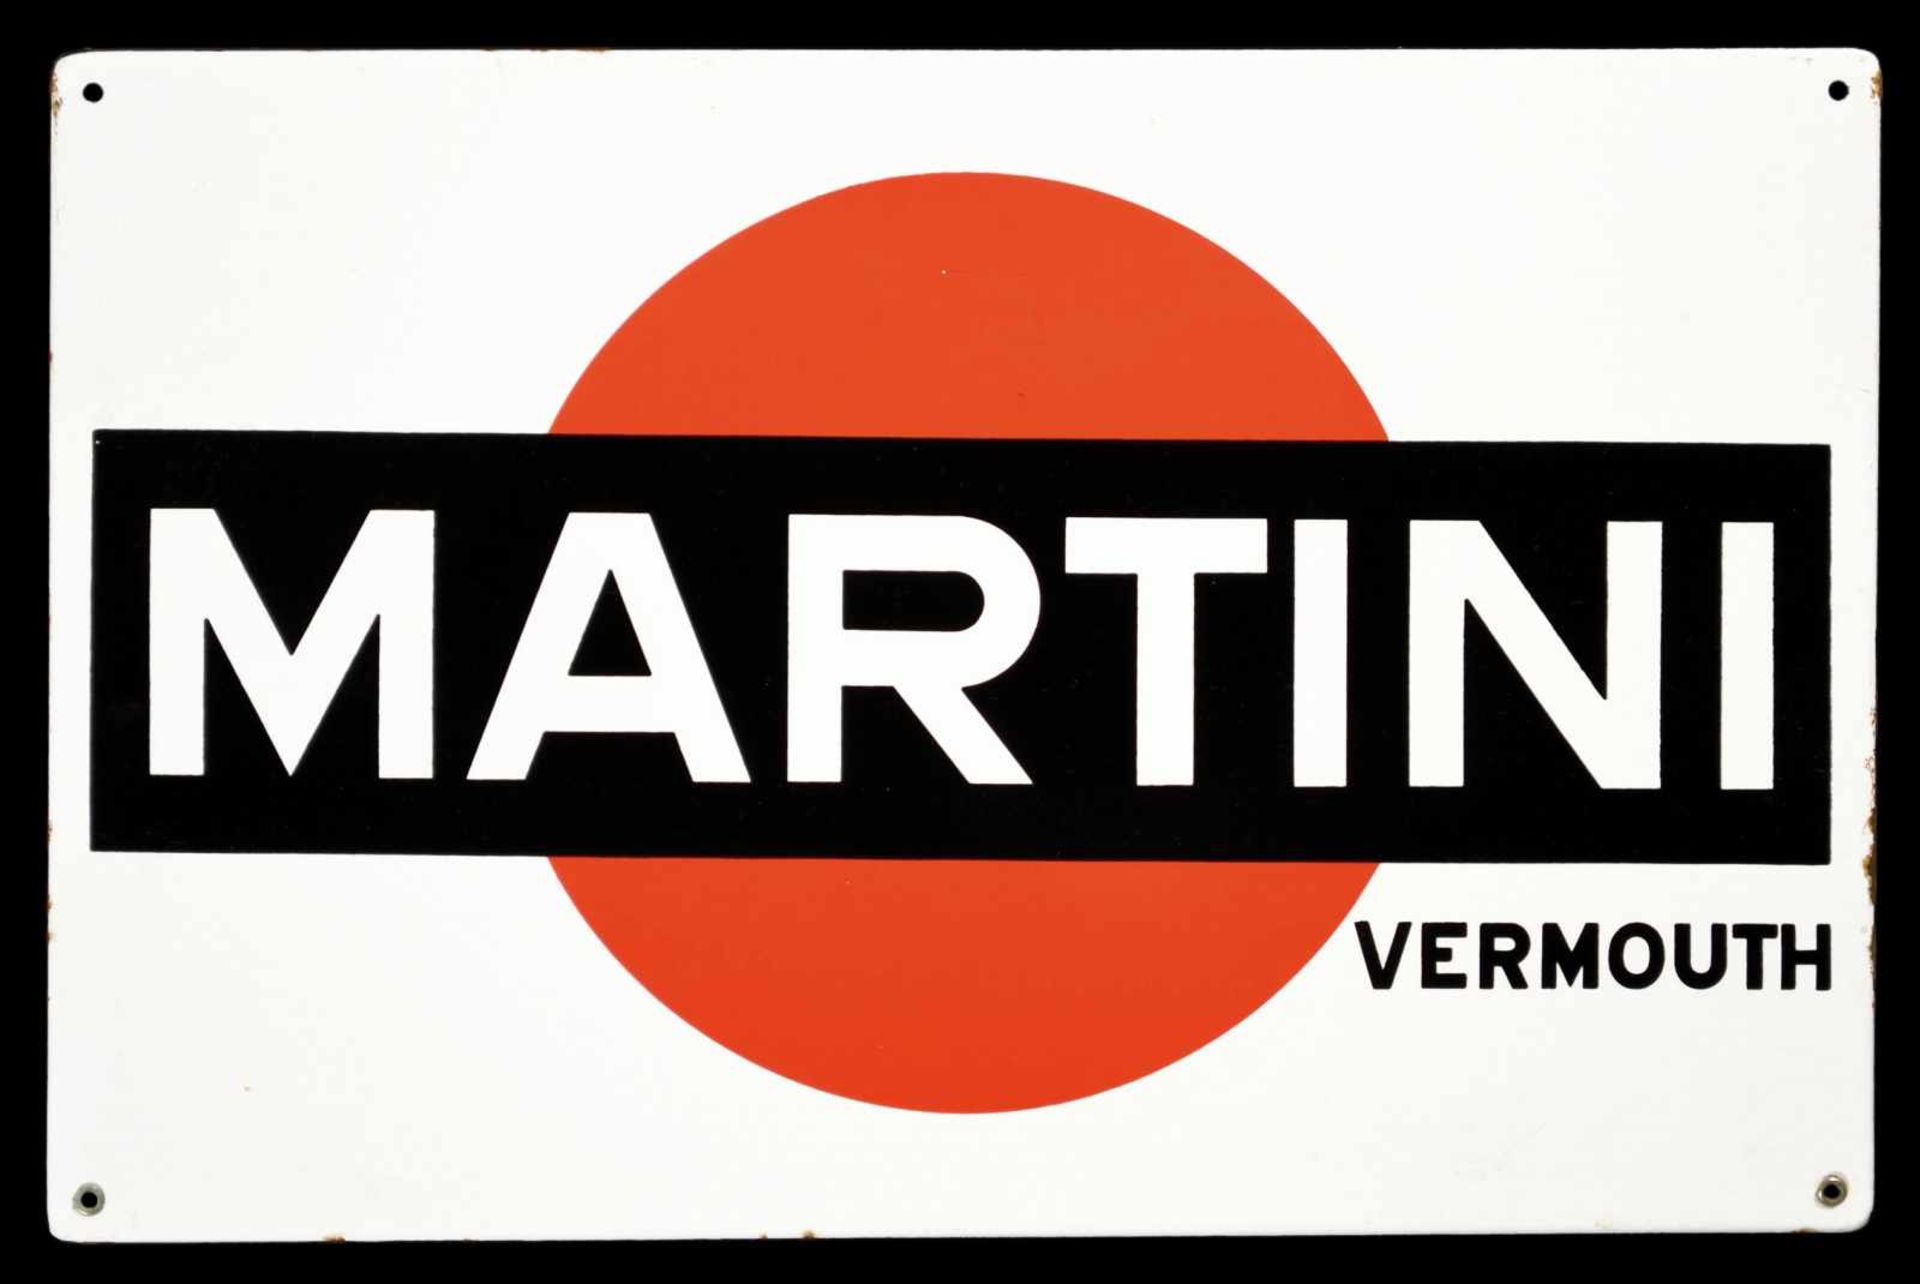 MARTINI VERMOUTH (1) Emailschild, abgekantet, schabloniert, Italien 4/1952, 57 x 37 cm, Moneta